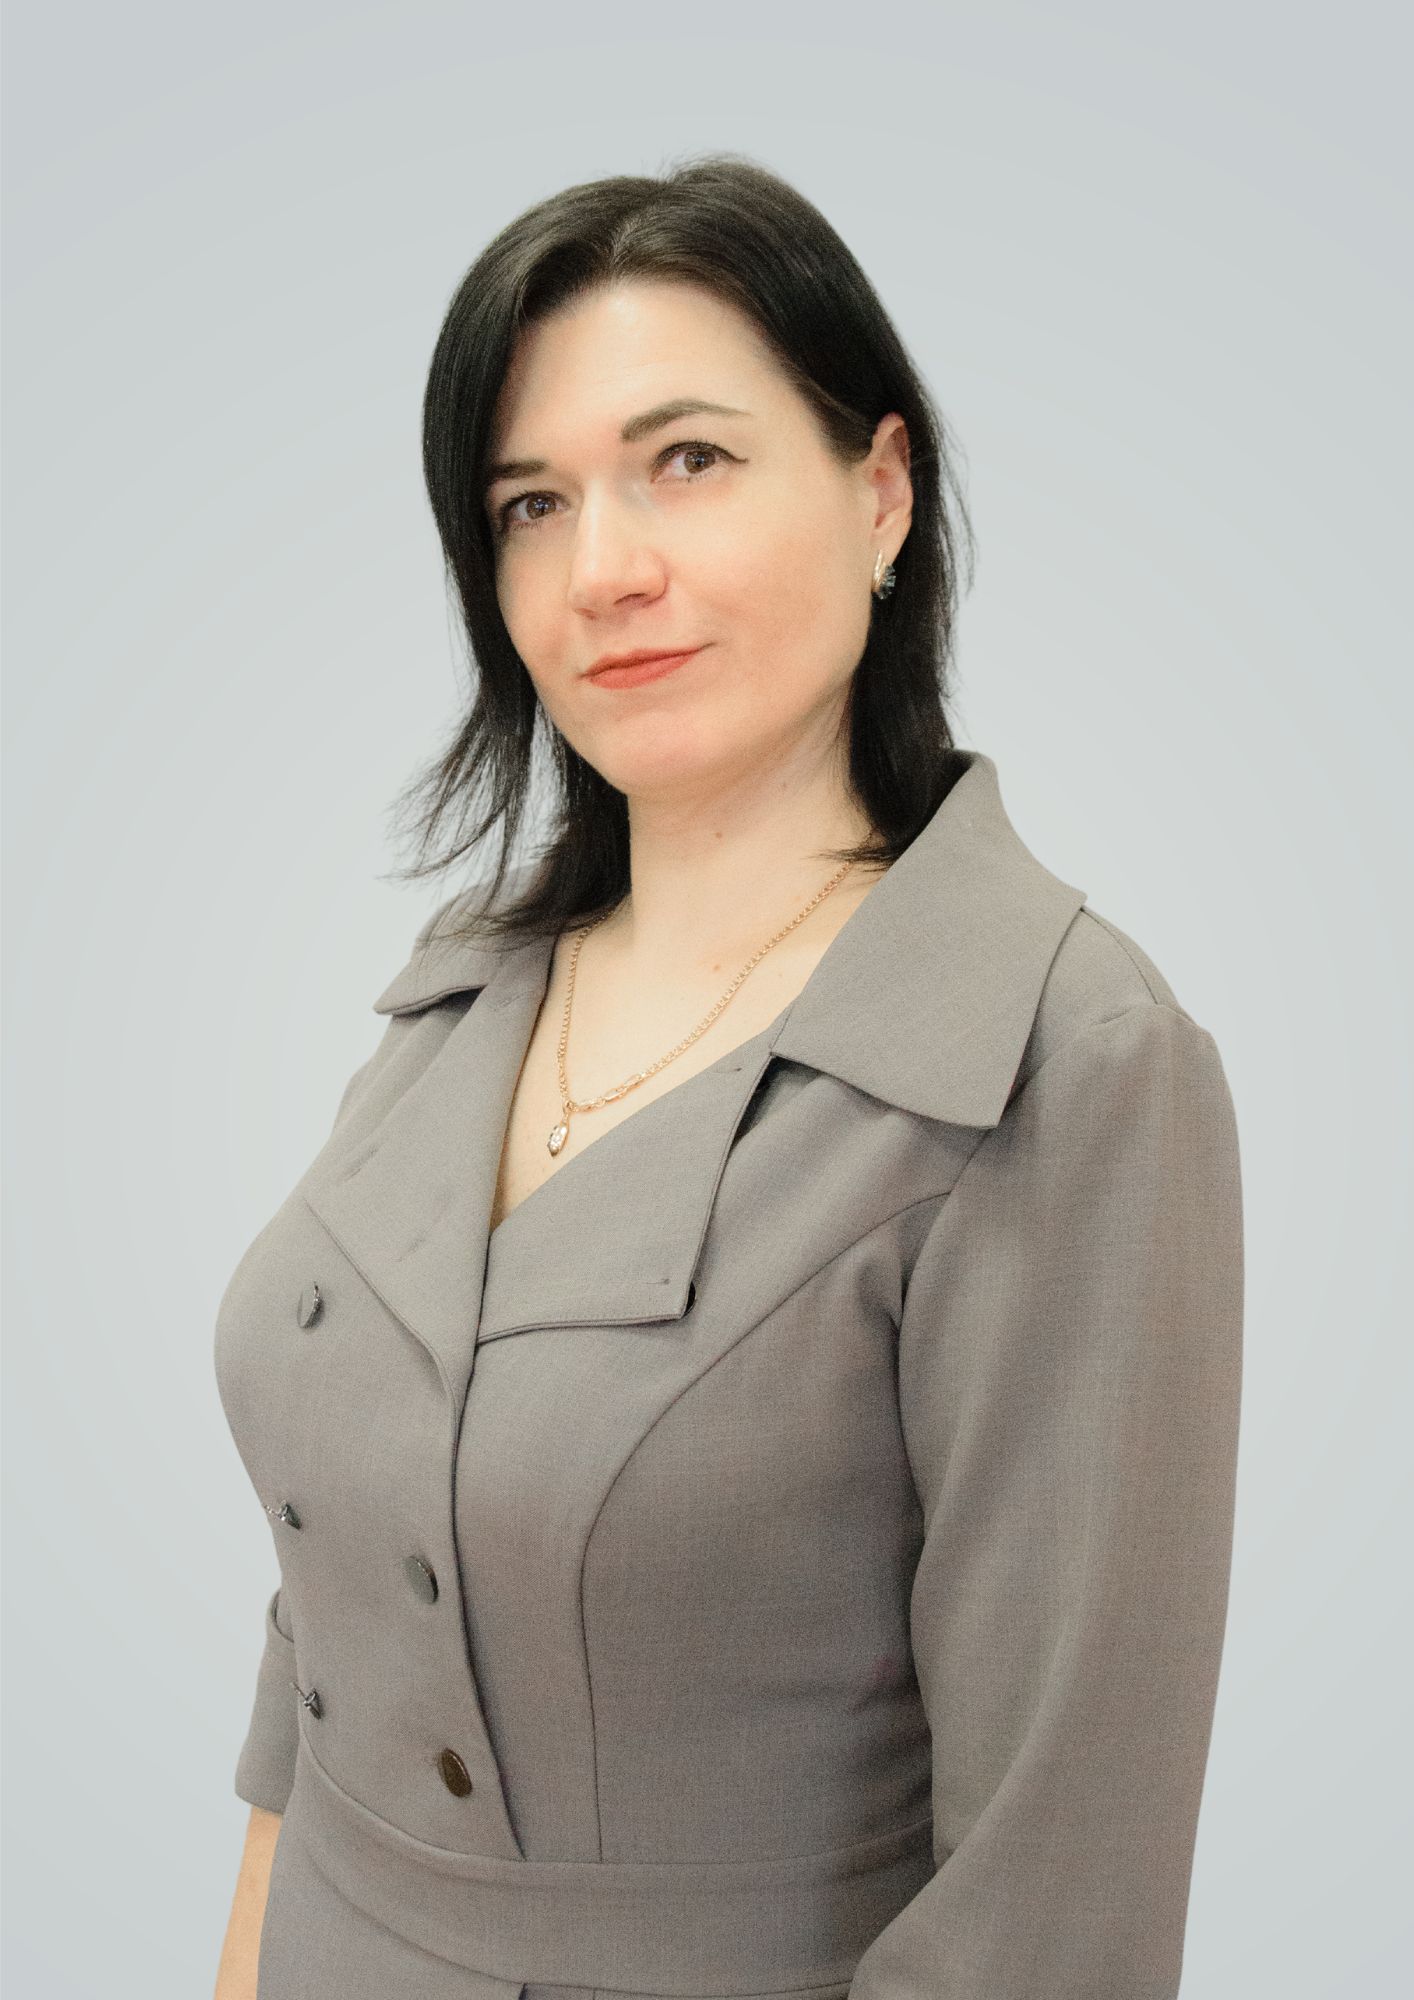 Сюсина Елена Николаевна.